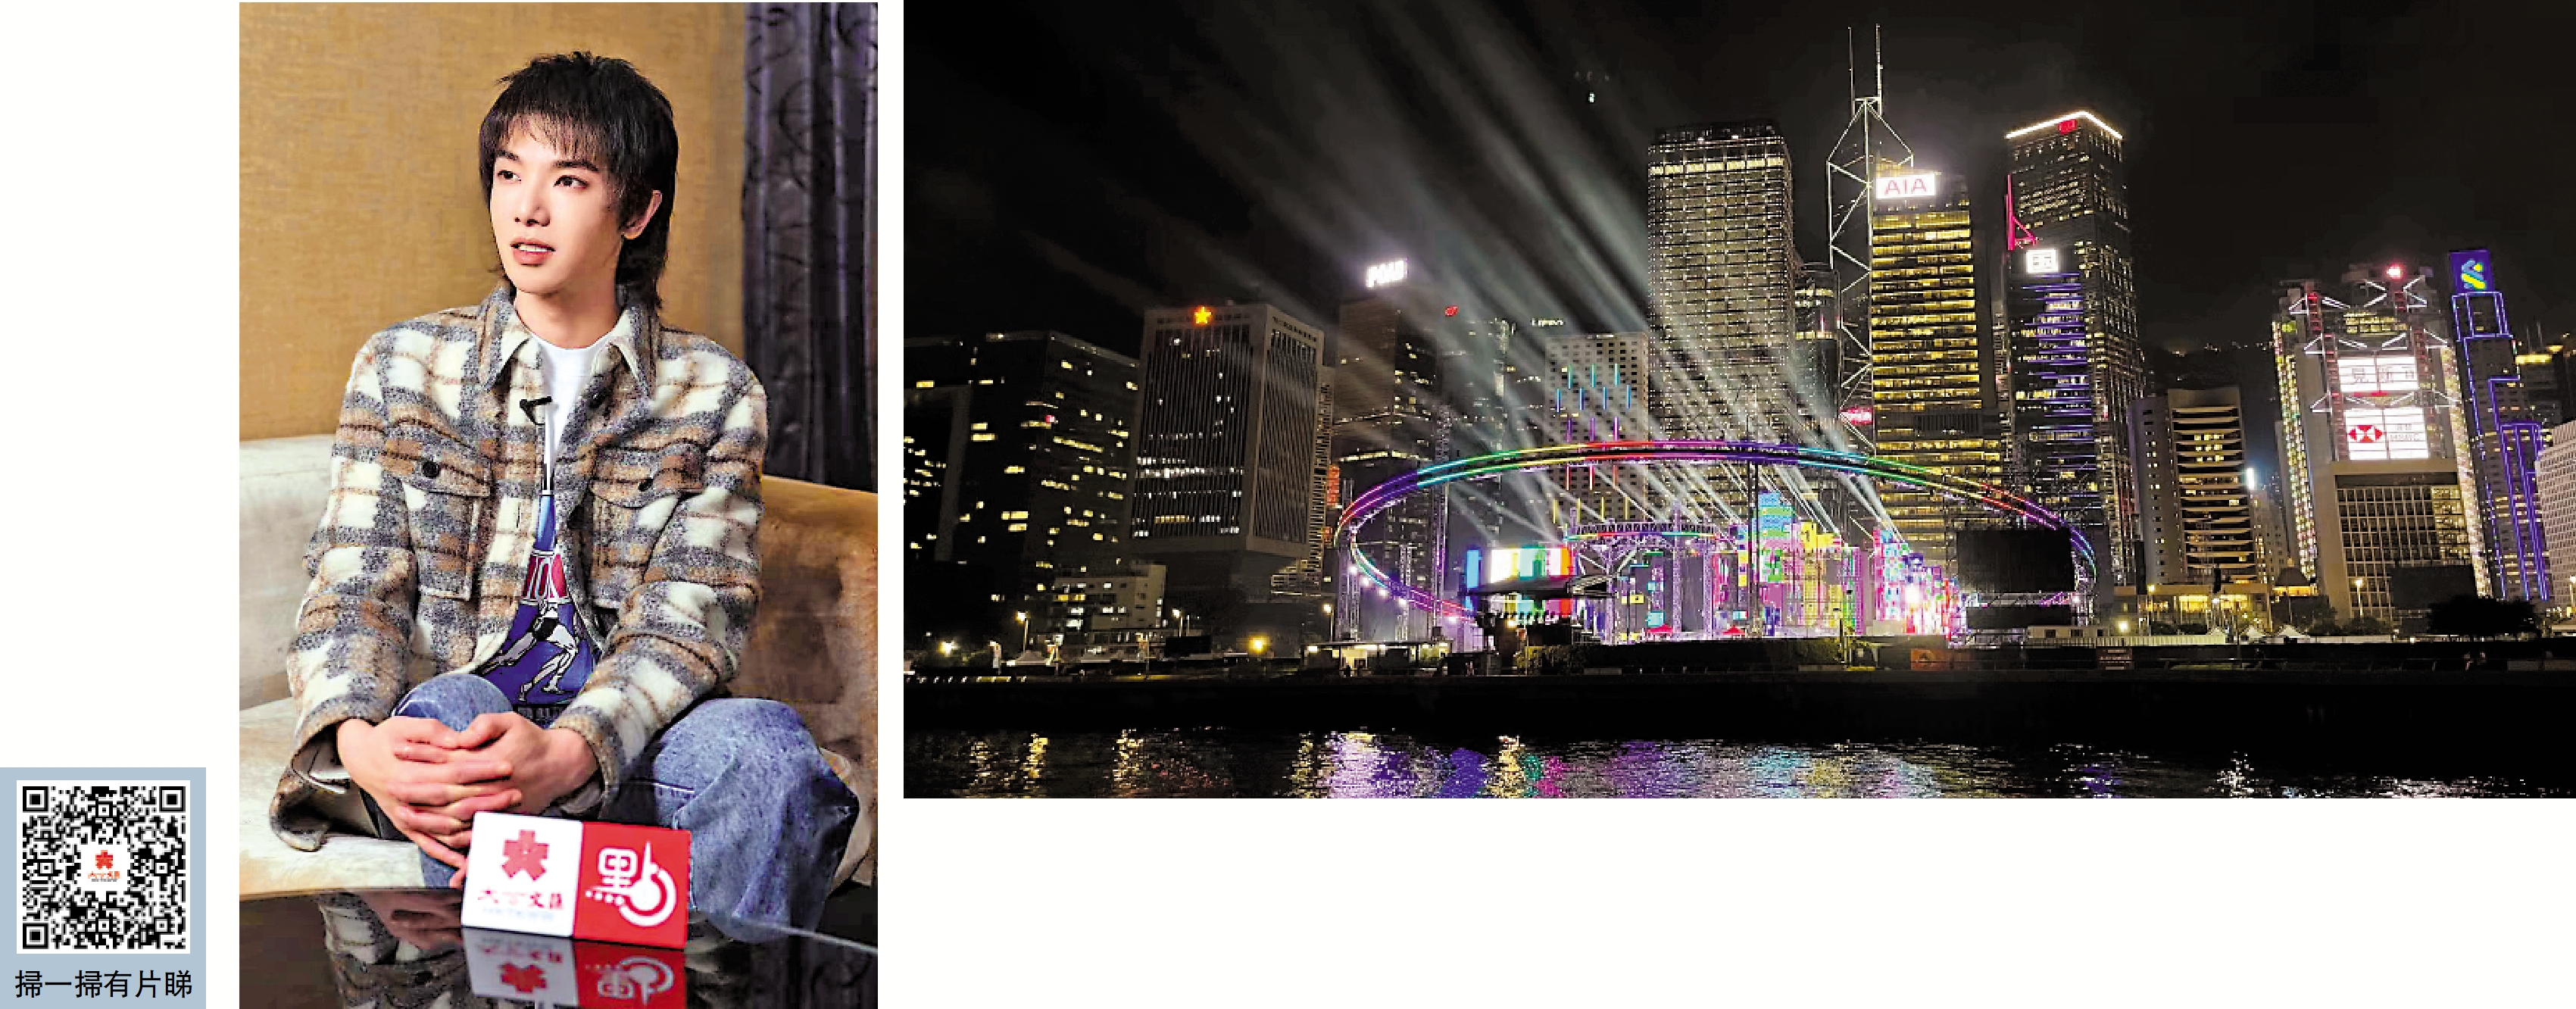 　　右圖：華晨宇「火星演唱會」於24日起連續三天在中環海濱舉行。左圖：華晨宇來港最想打卡維港。\大公報記者胡若璋攝